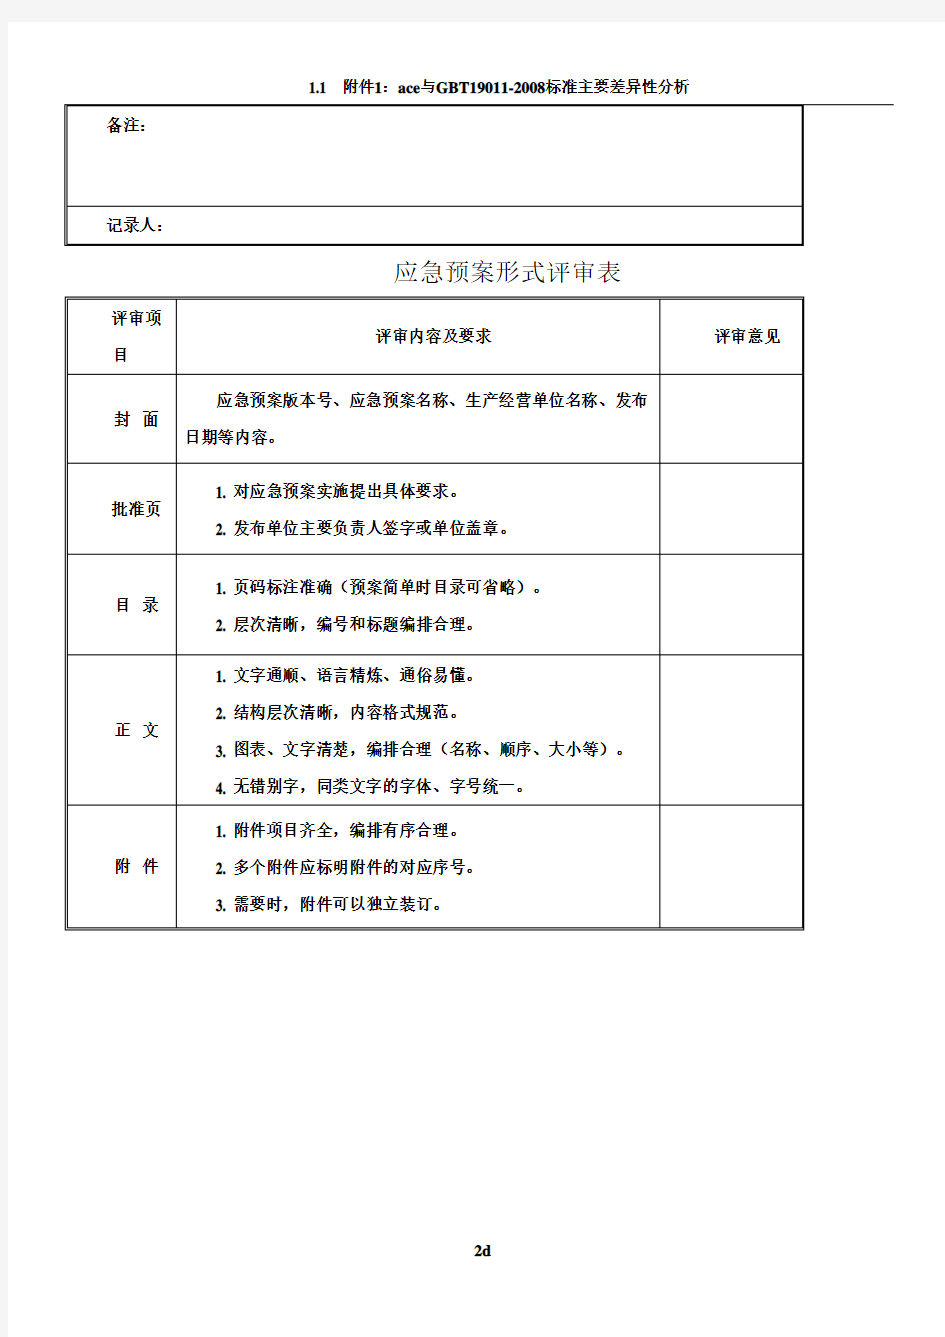 应急预案评审记录表(全)_2